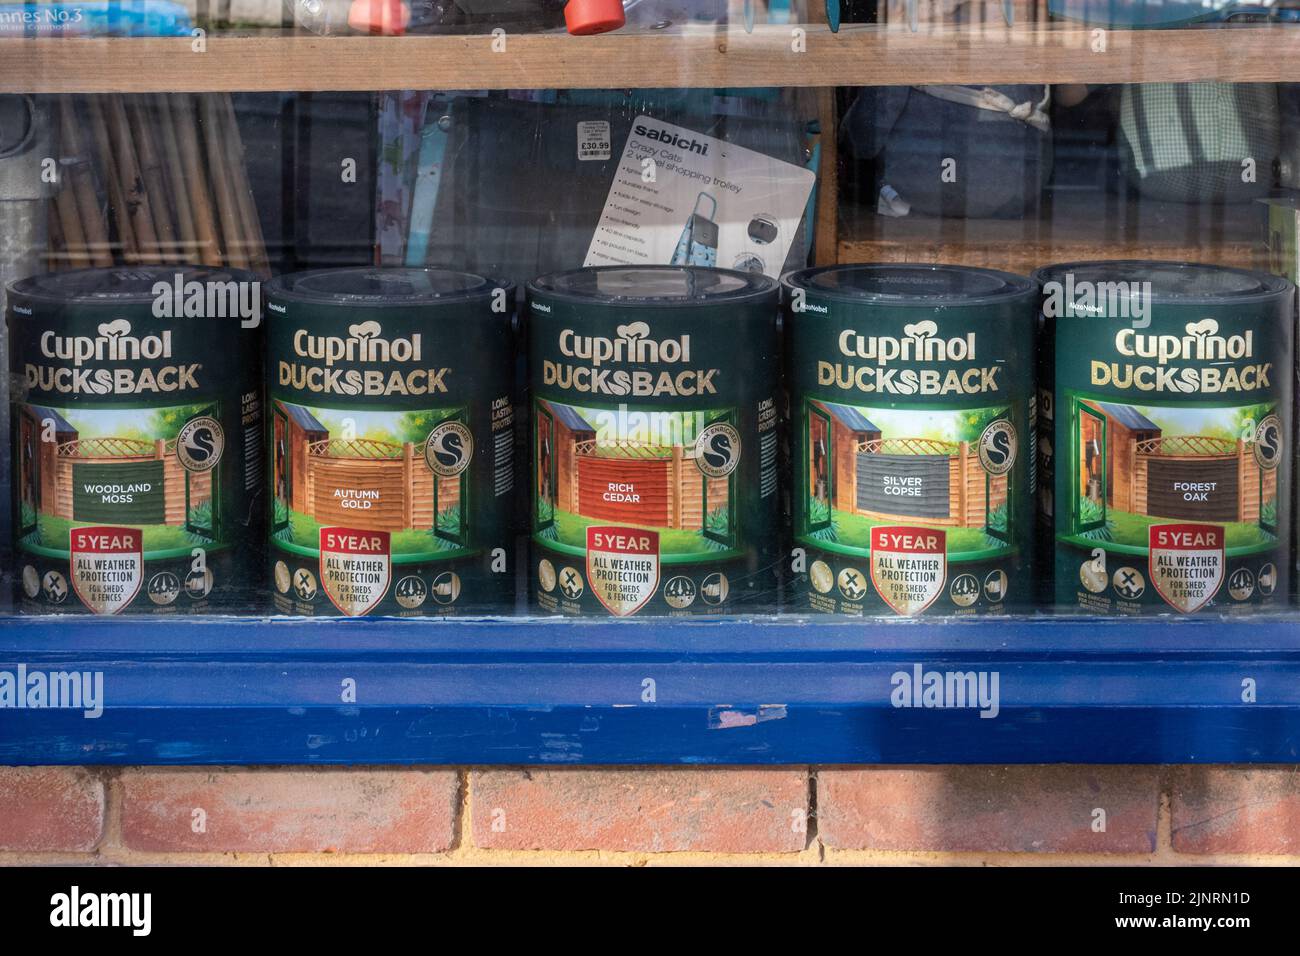 Cuprinol Ducksback, boîtes de bois tachent dans une vitrine, Angleterre, Royaume-Uni Banque D'Images